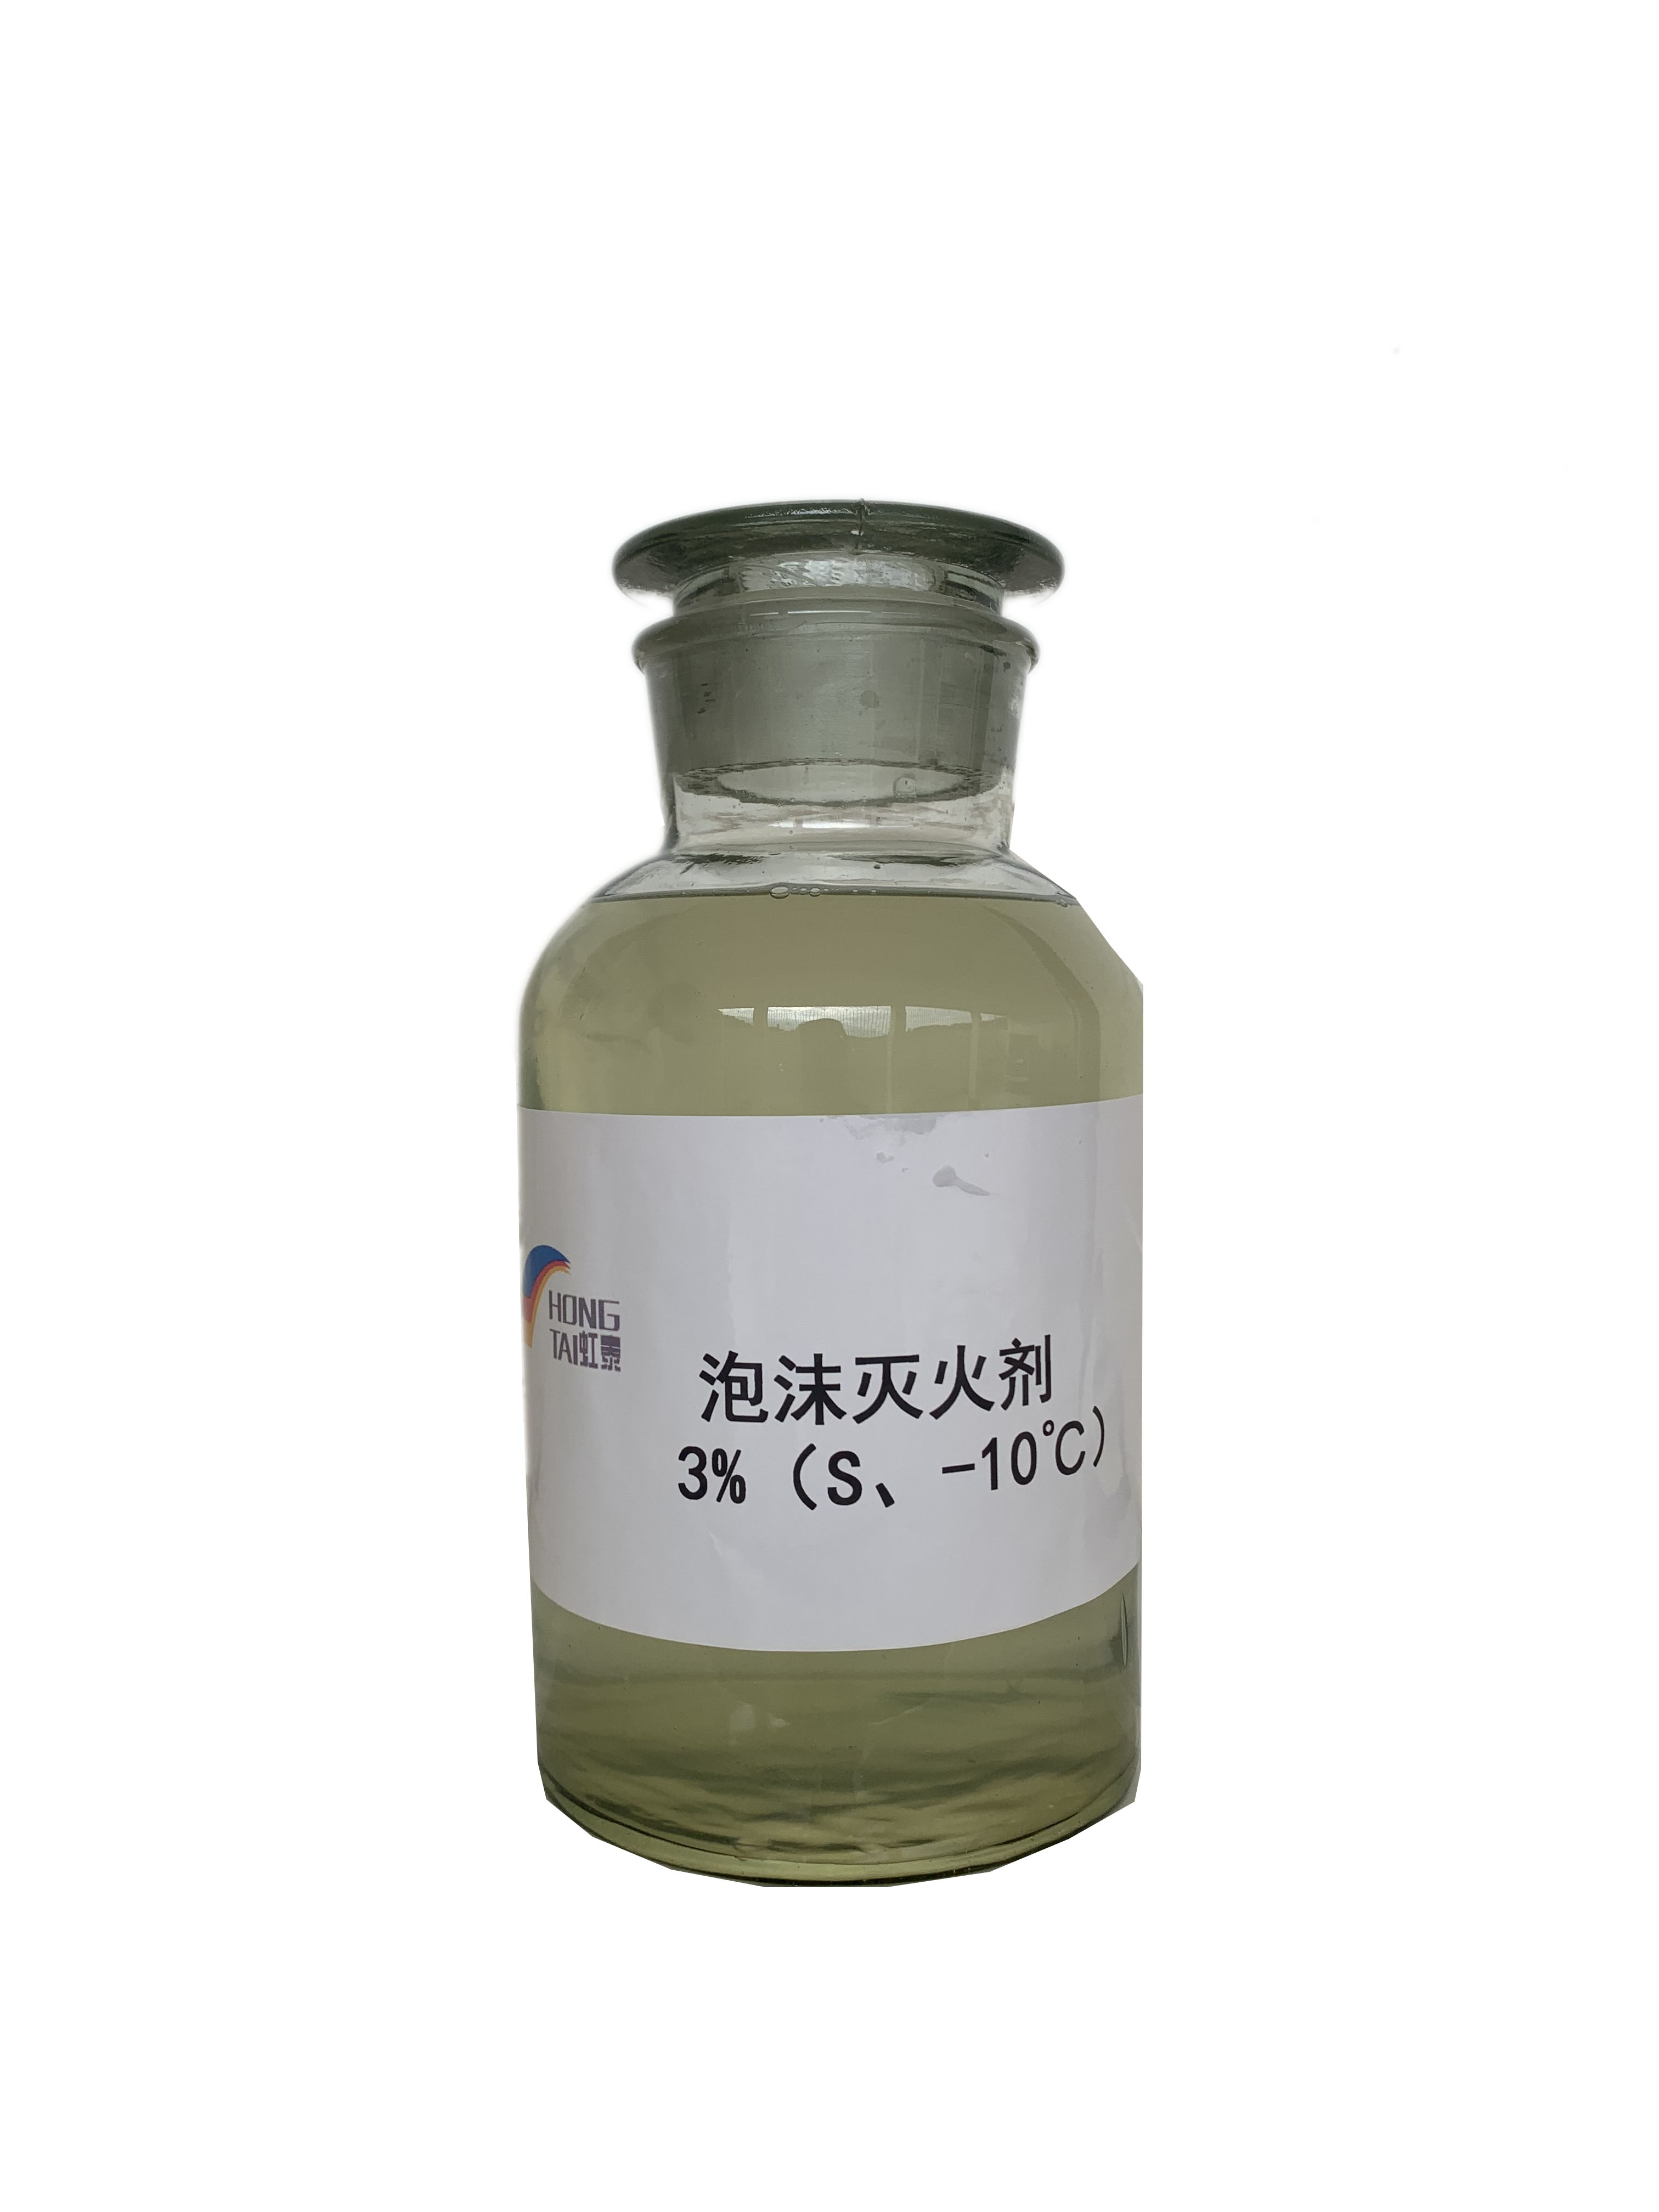 合成泡沫灭火剂环境友好型3%合成-10(IIIC)